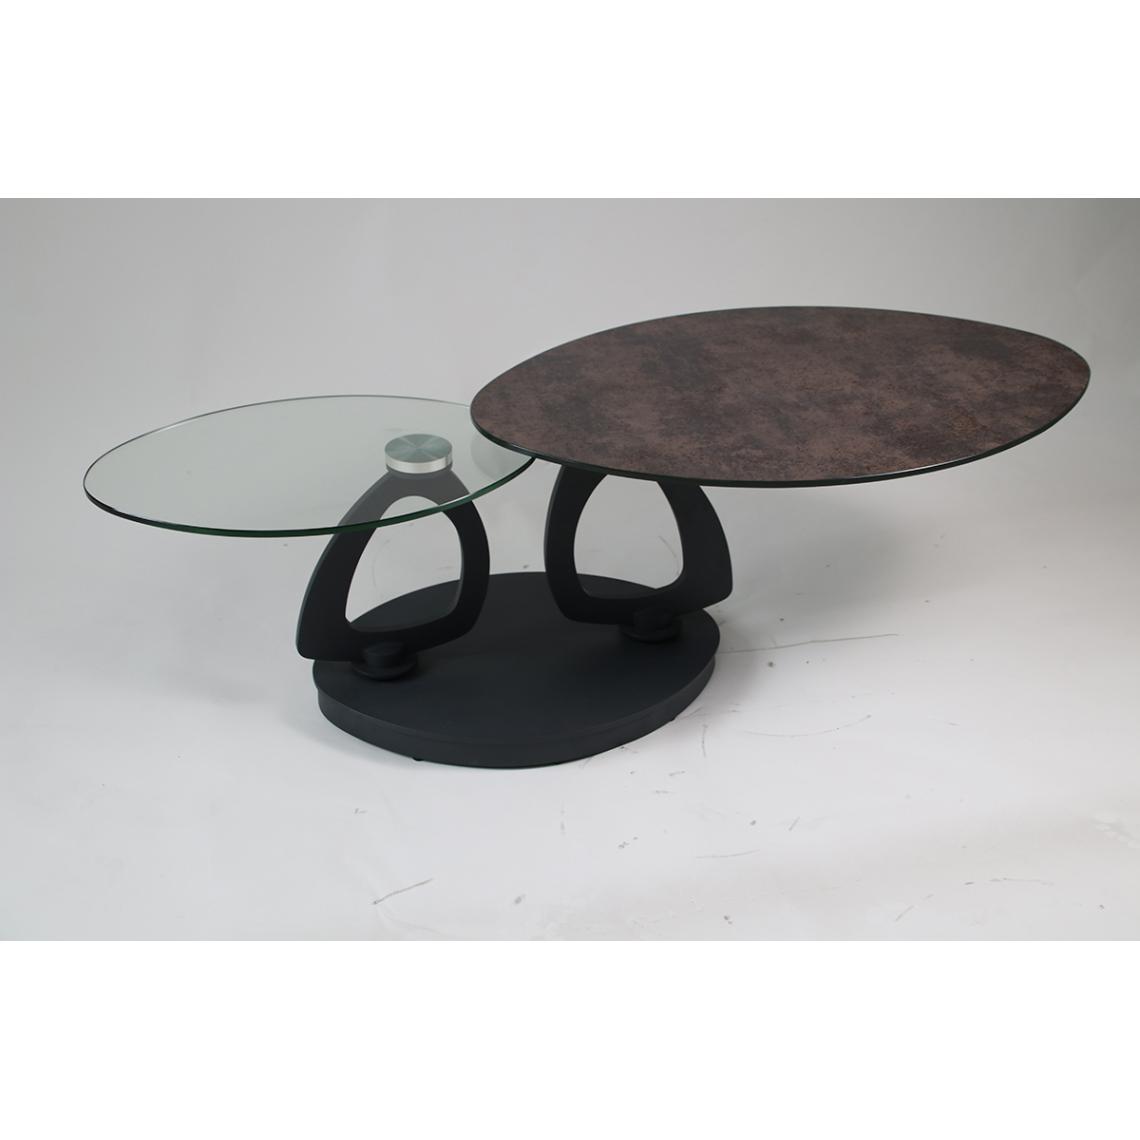 Pegane - Table basse en acier / céramique coloris gris anthracite - Longueur 88-138 x largeur 58 x hauteur 42 cm - Tables basses